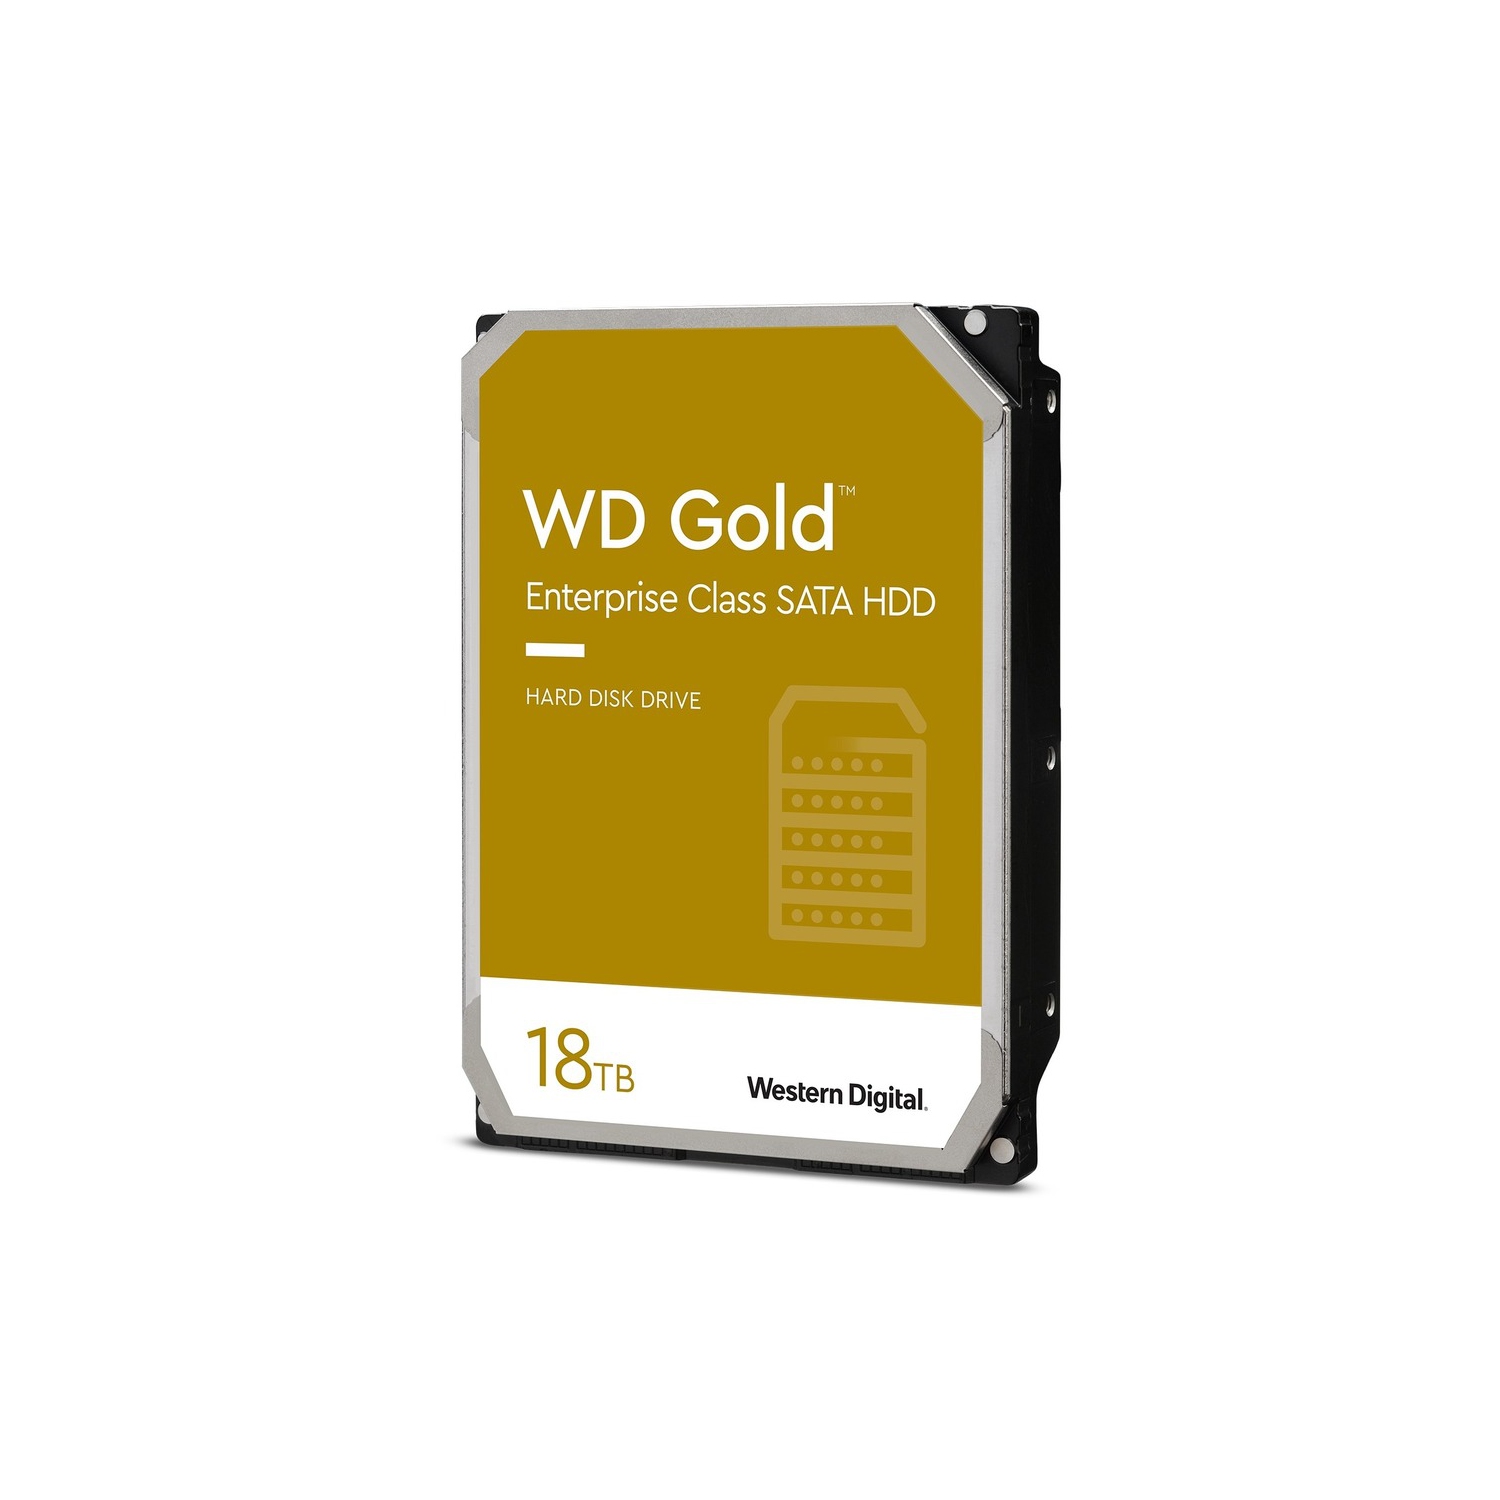 Western Digital Gold Enterprise Class SATA HDD Internal Storage, 18TB WD181KRYZ